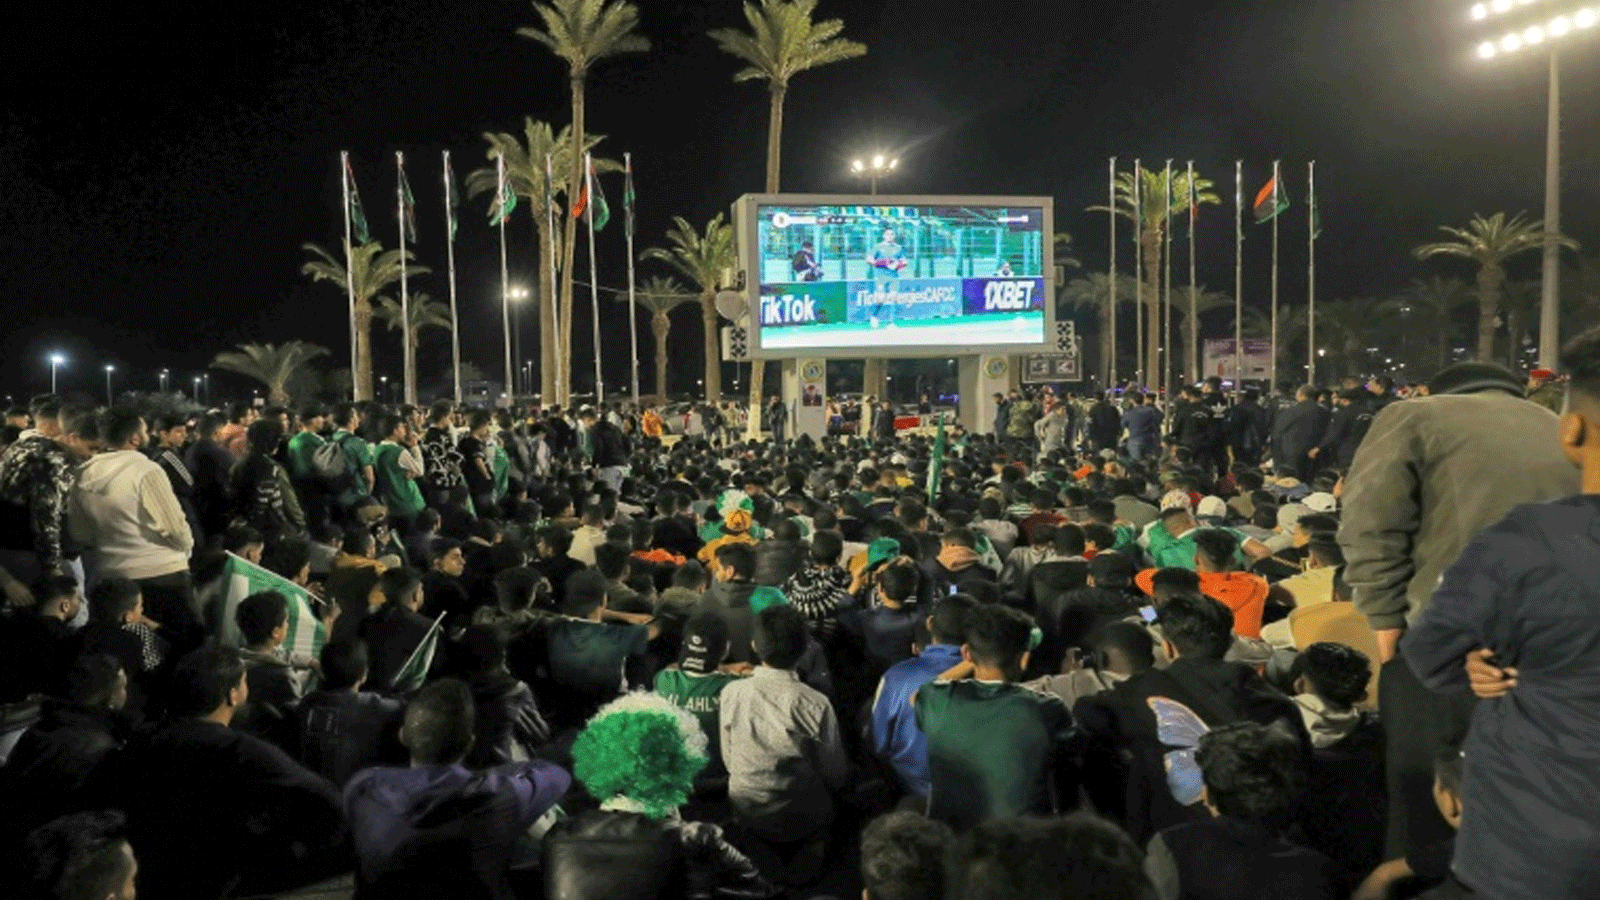 مئات المشجعين احتشدوا في ساحة الشهداء الواسعة في قلب العاصمة، لمتابعة بث المباراة عبر شاشة عملاقة نُصِبَت خصيصاً لنقل هذا الحدث